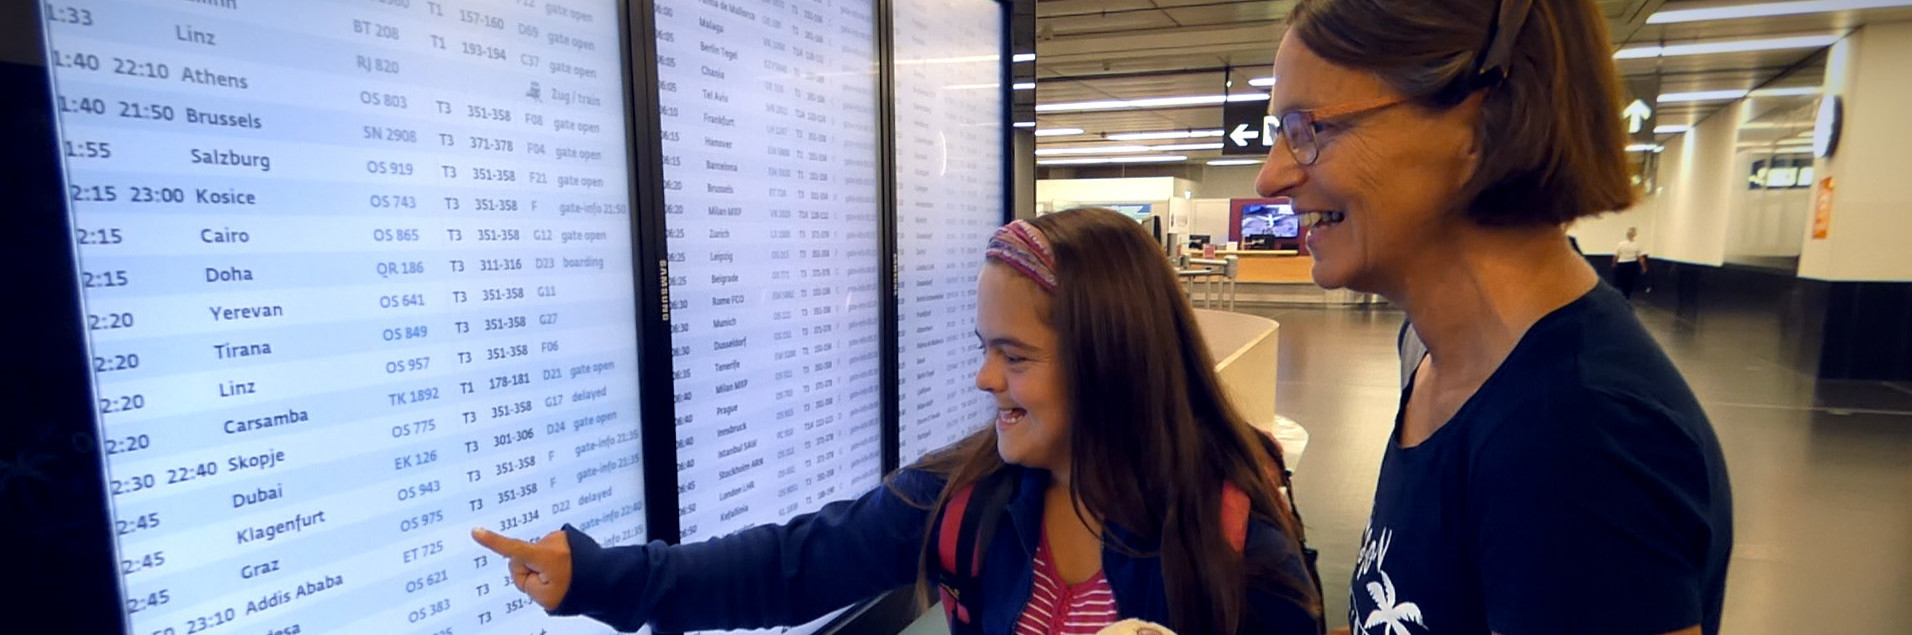 Eine junge Frau und ihre Mutter stehen vor einer Anzeigetafel am Flughafen